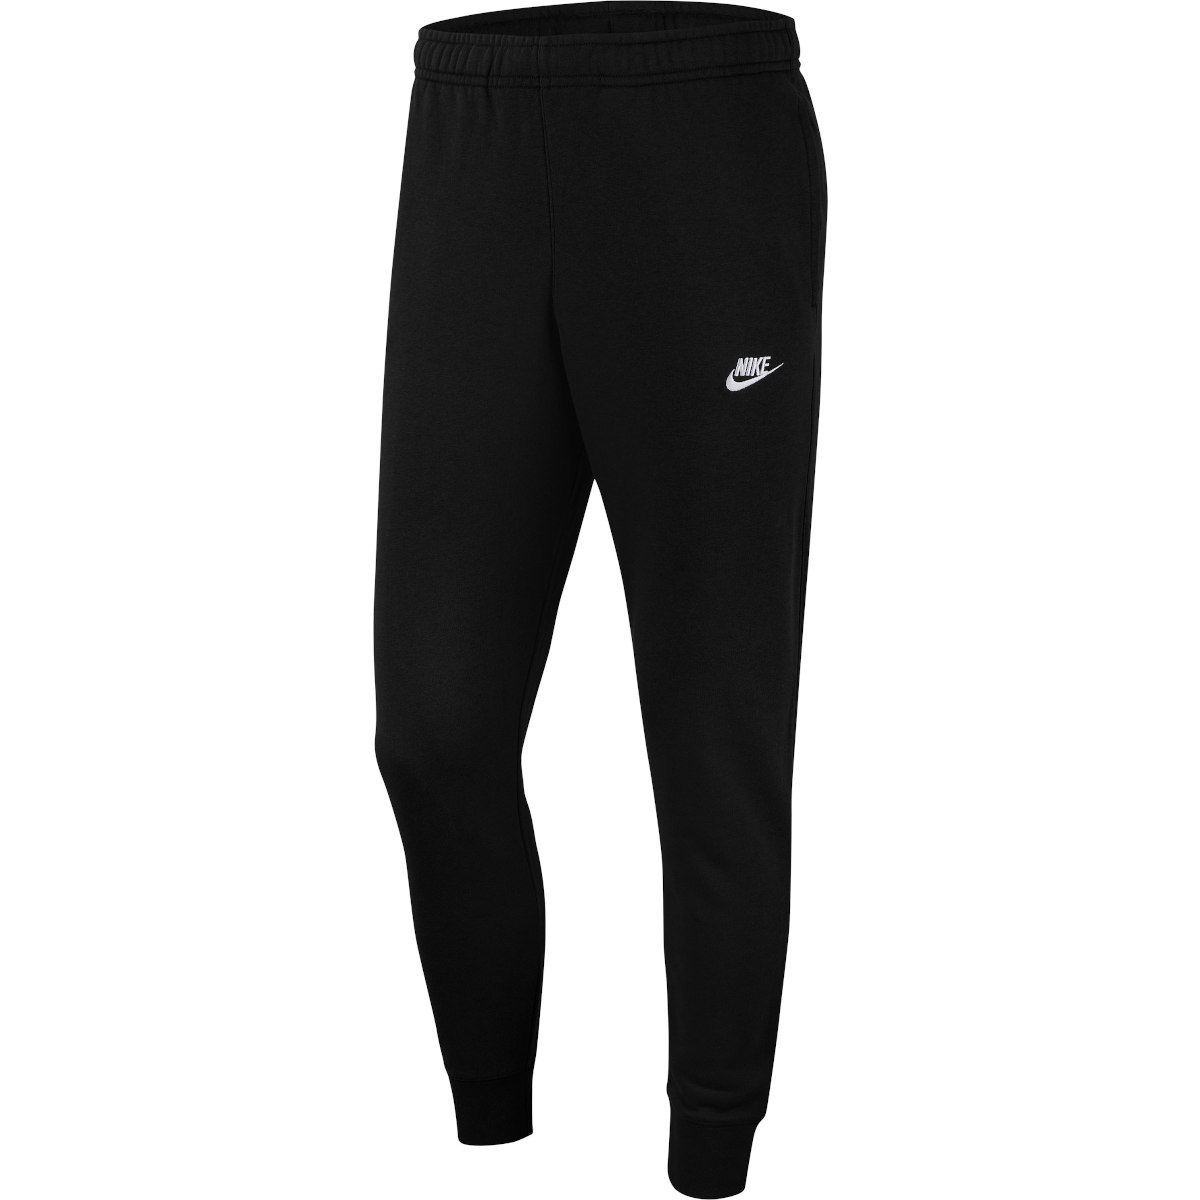 Produktbild von Nike Sportswear Club French Terry Herren-Jogginghose - schwarz/schwarz/weiß BV2679-010